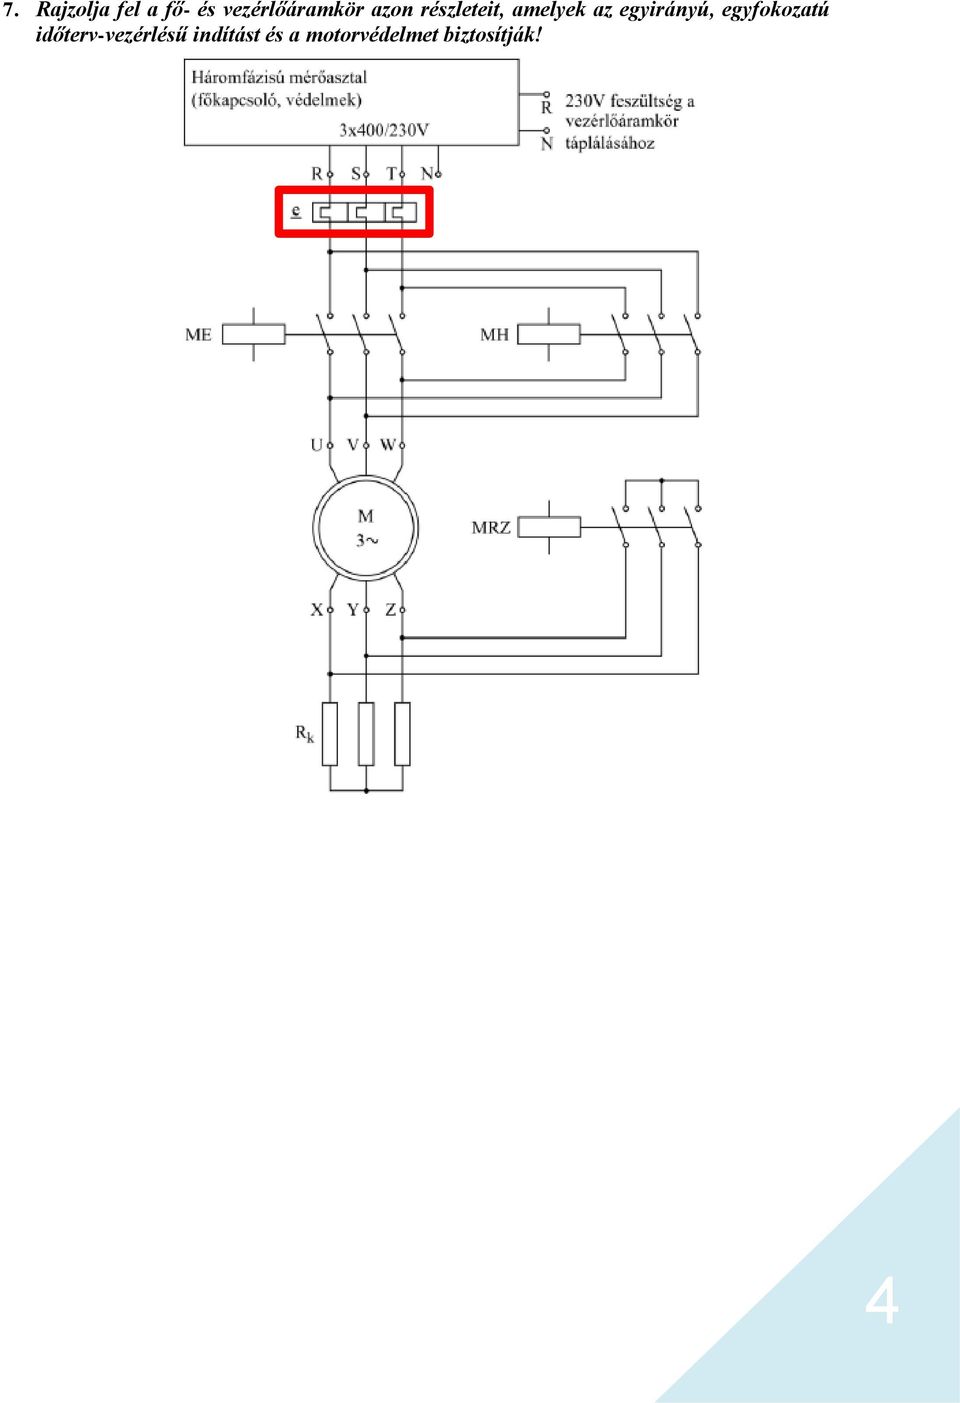 Elektromechanika. 2. mérés. Időterv-vezérlés, PLC-k alkalmazása - PDF  Ingyenes letöltés